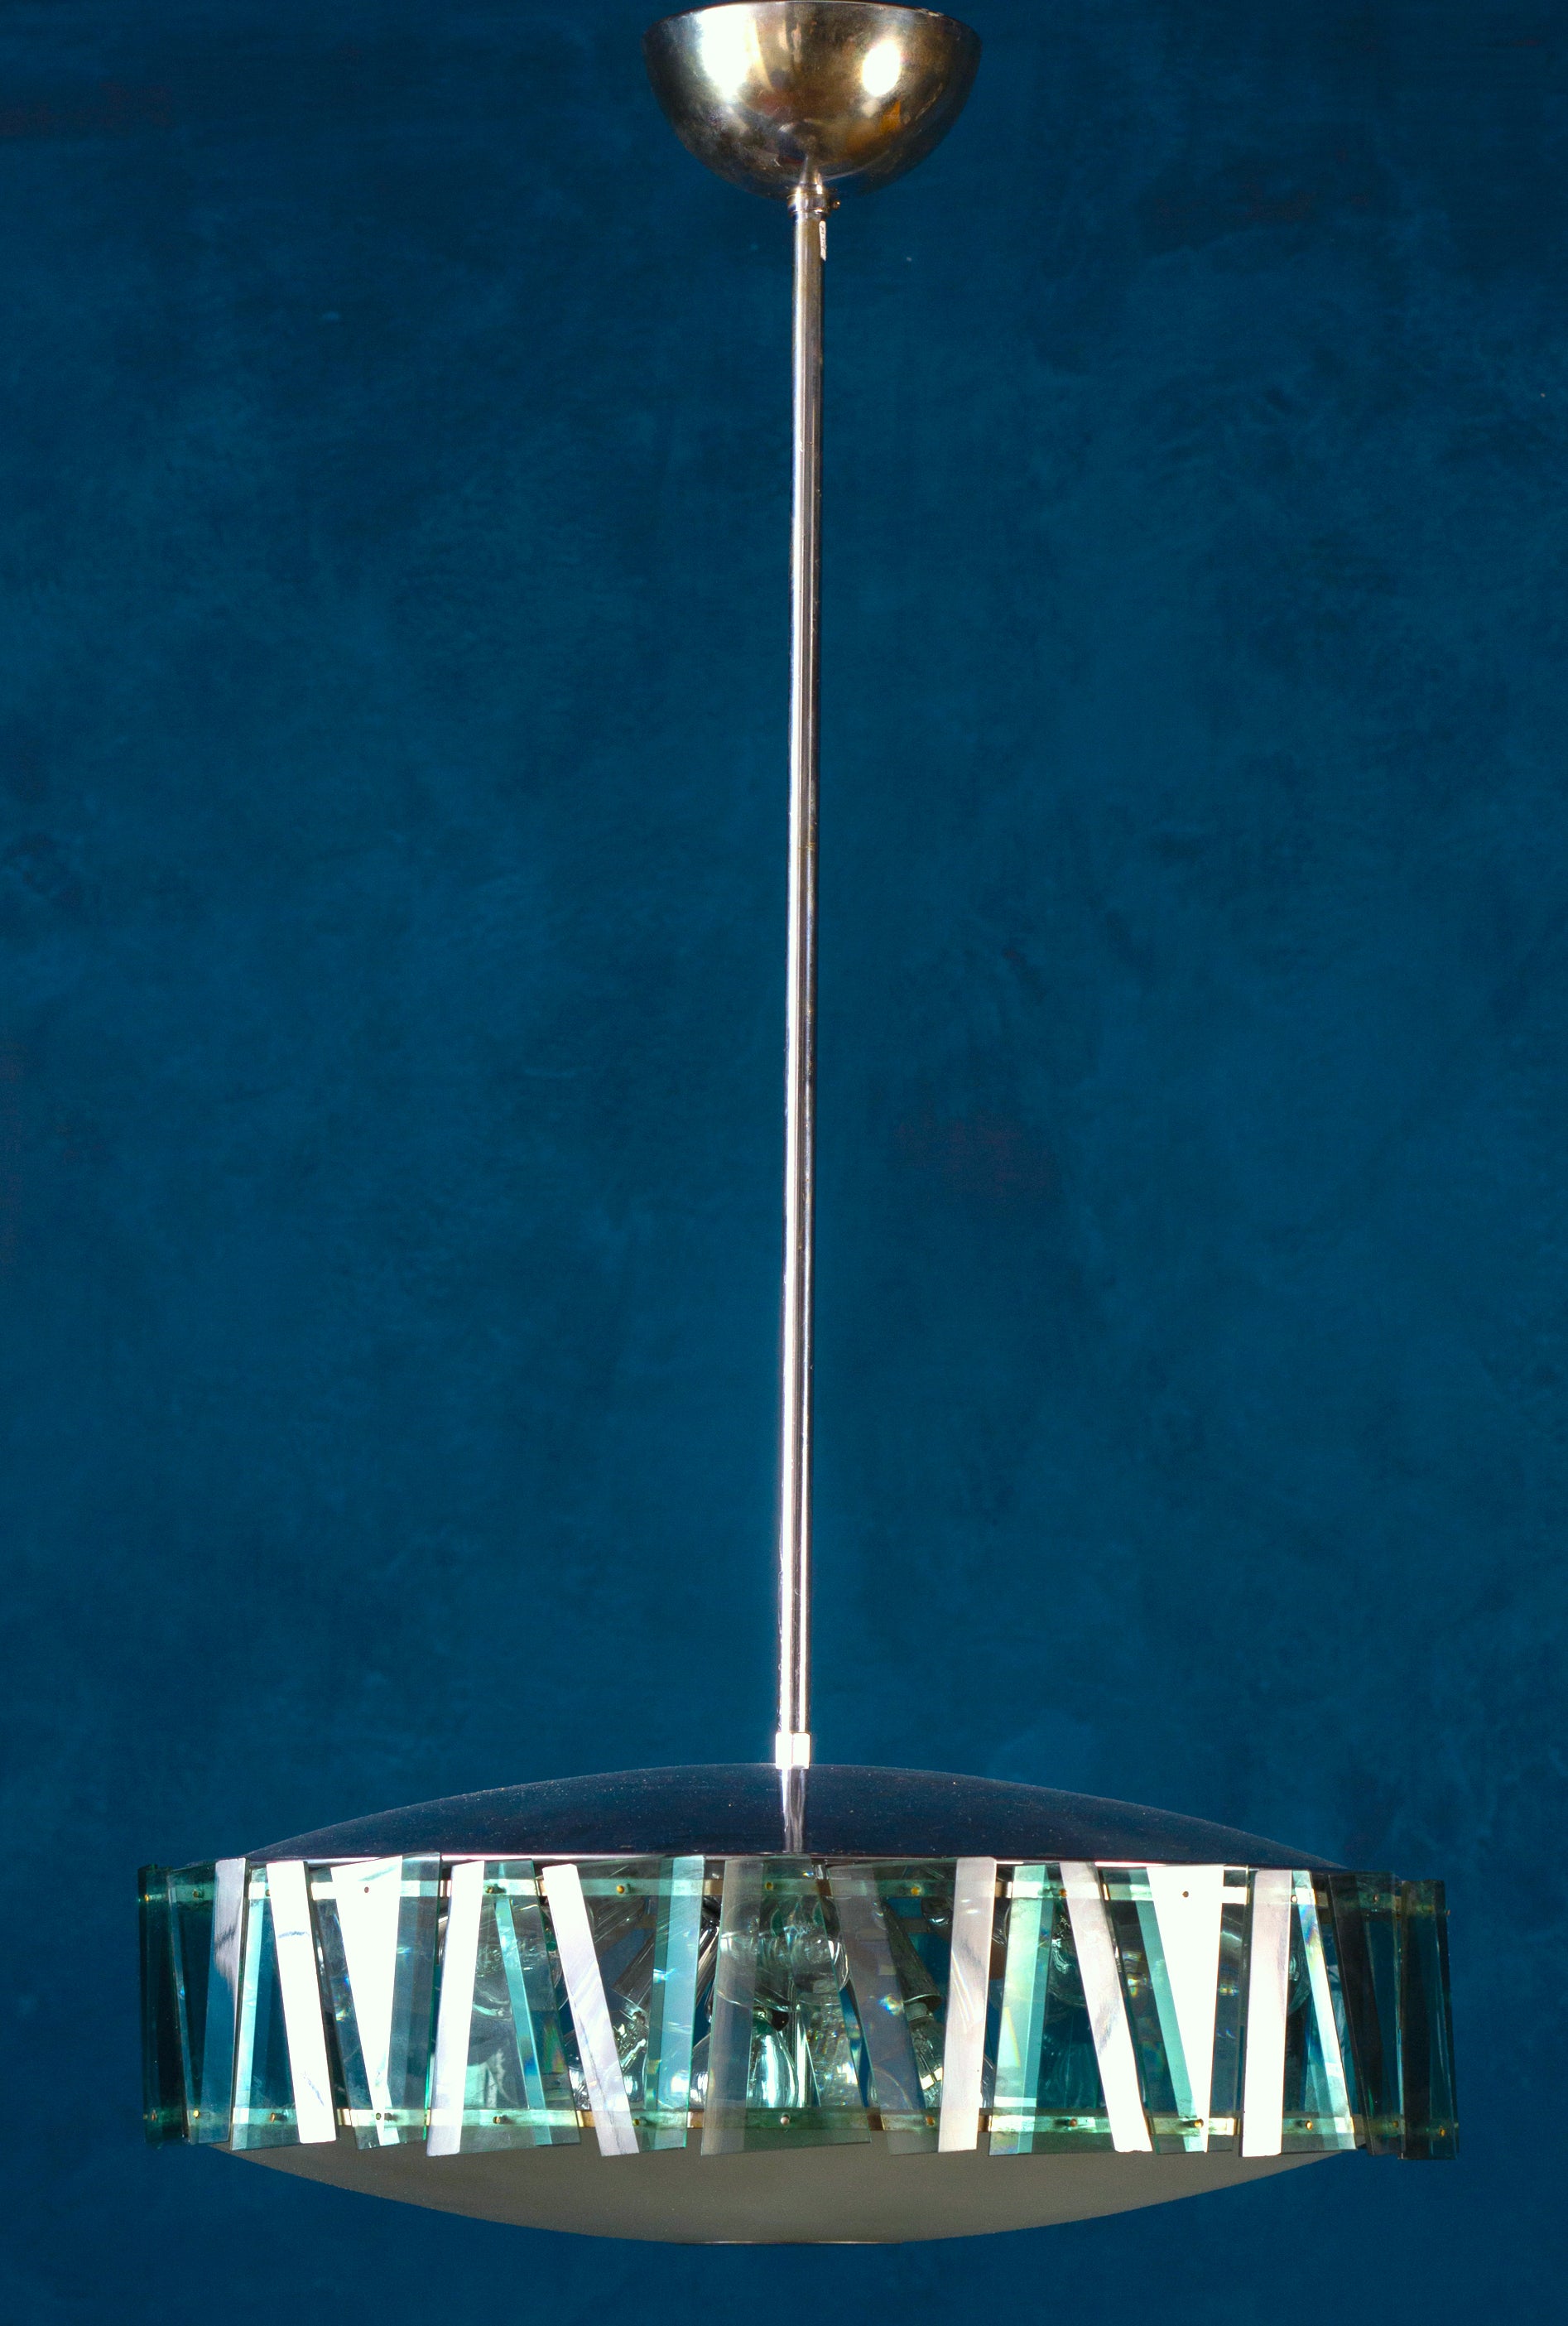 Eleganter minimalistischer Kronleuchter von Max Ingrand für Fontana Arte mit einer Schale aus Milchglas, die von einem wunderschönen grünen, geschliffenen Glasschirm umgeben ist, der von polierten, verchromten Beschlägen getragen wird.
Die Brille